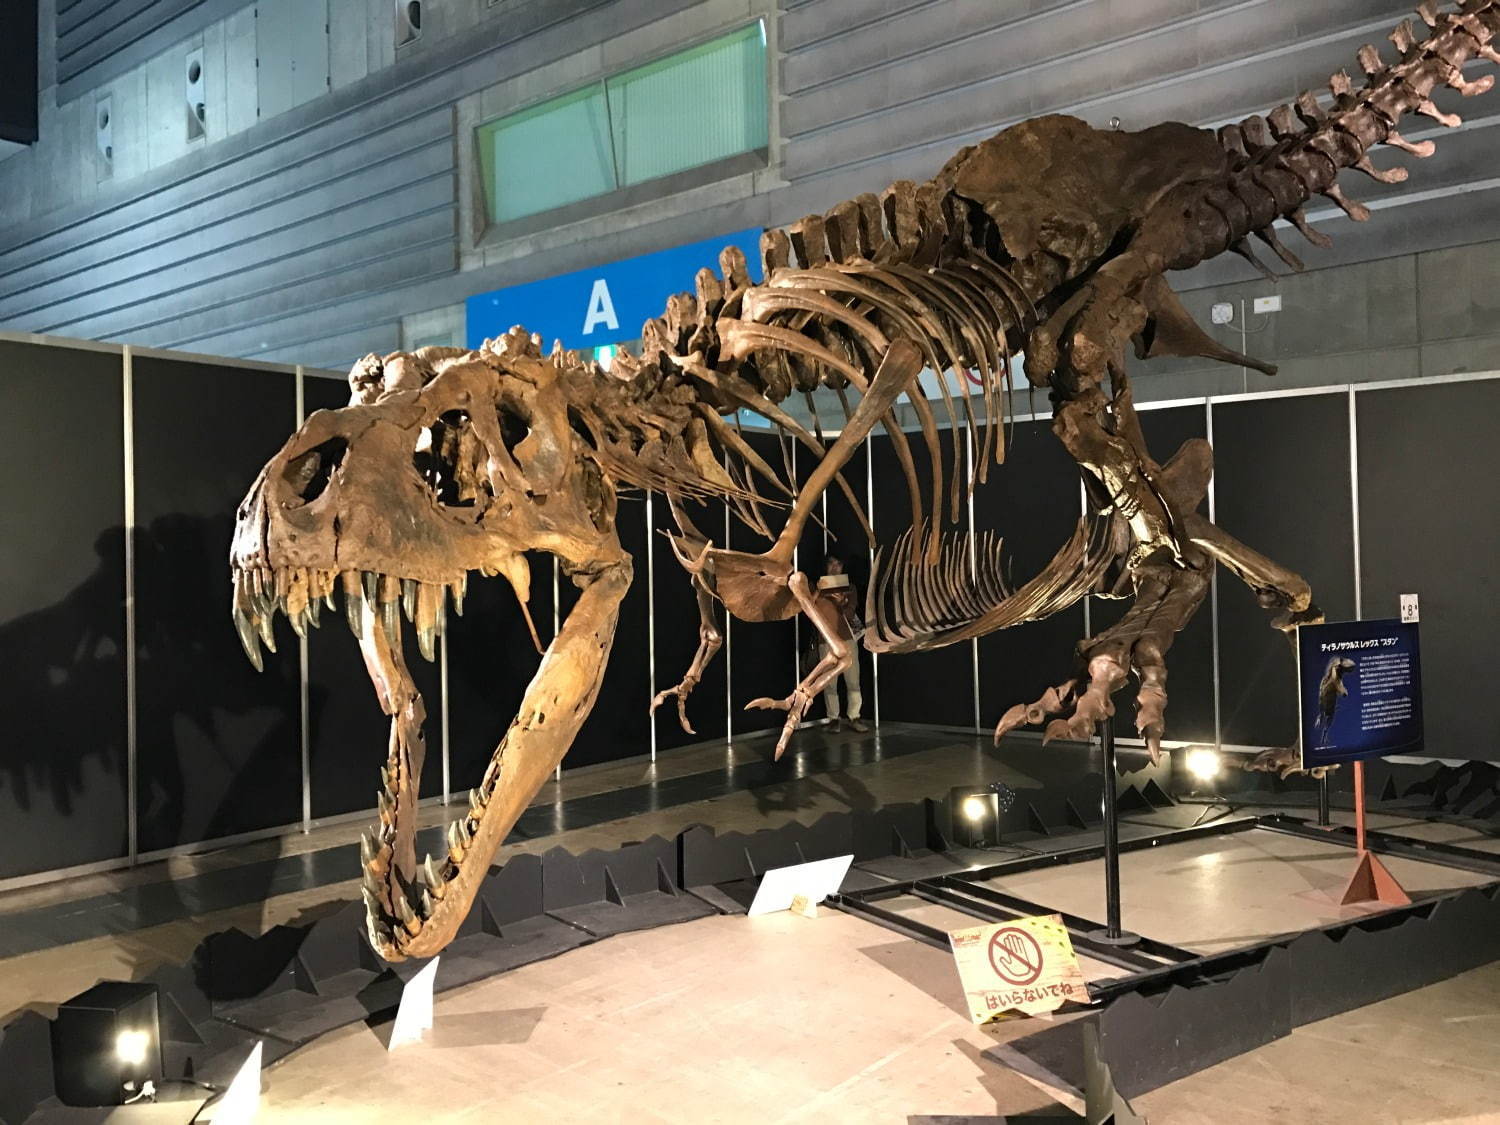 開催中止 ヨコハマ恐竜展 パシフィコ横浜で開催 五大陸の恐竜化石や全身骨格など展示 ファッションプレス